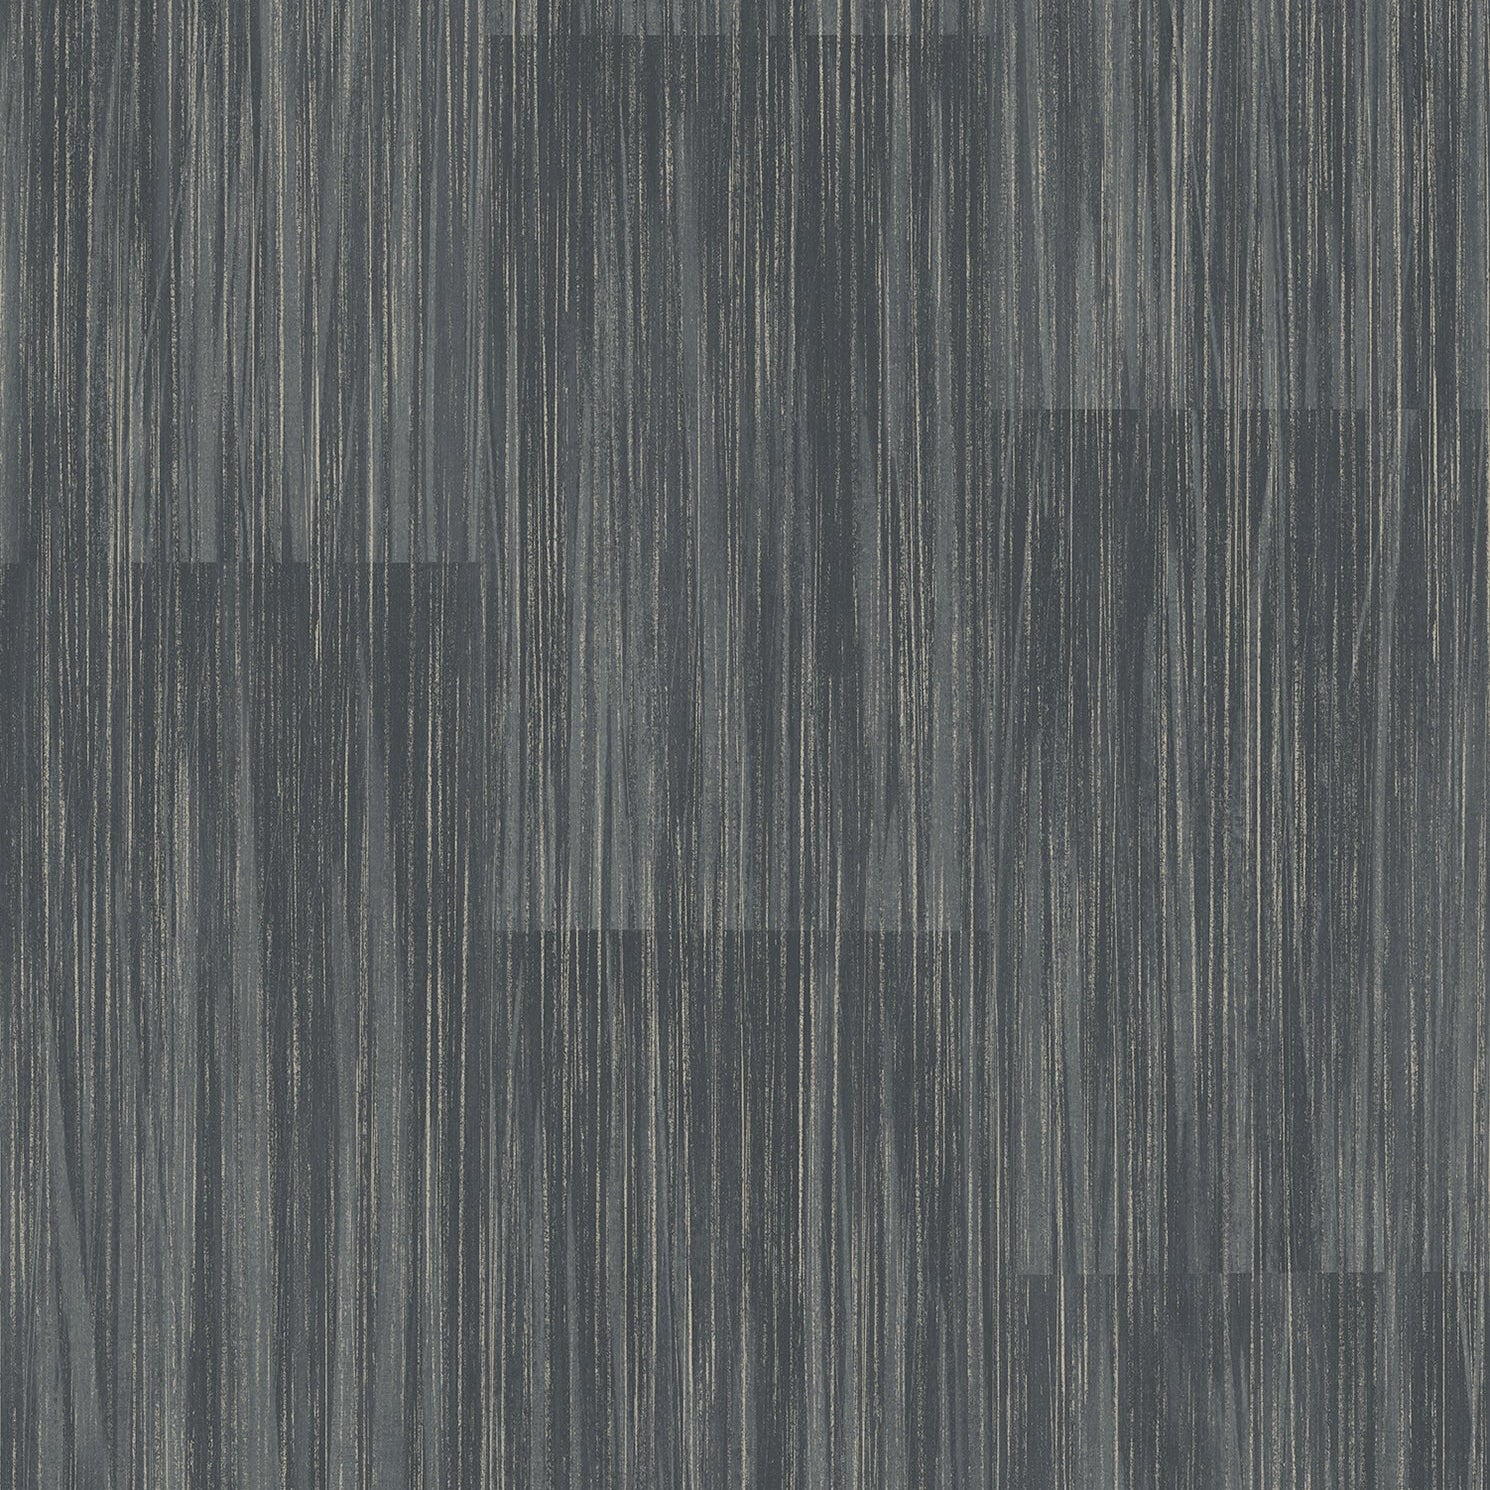 Buy 4020-85709 Geo & Textures Soren Dark Grey Striated Plank Dark Grey by Advantage